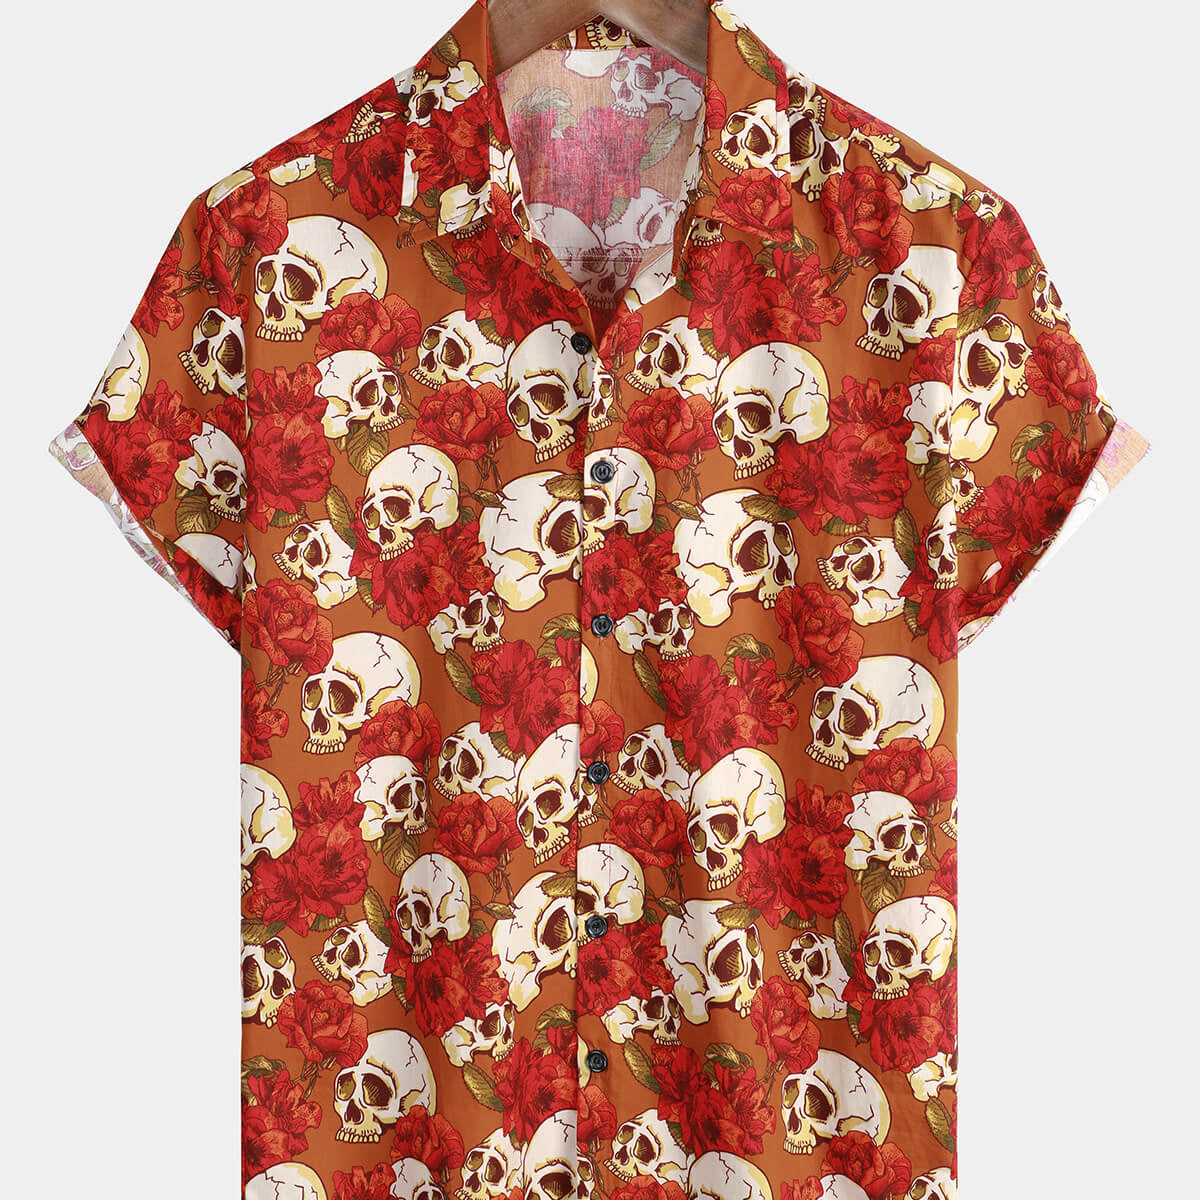 Chemise cool à manches courtes pour hommes, boutonnée en forme de crâne, rouge, pour les vacances d'été